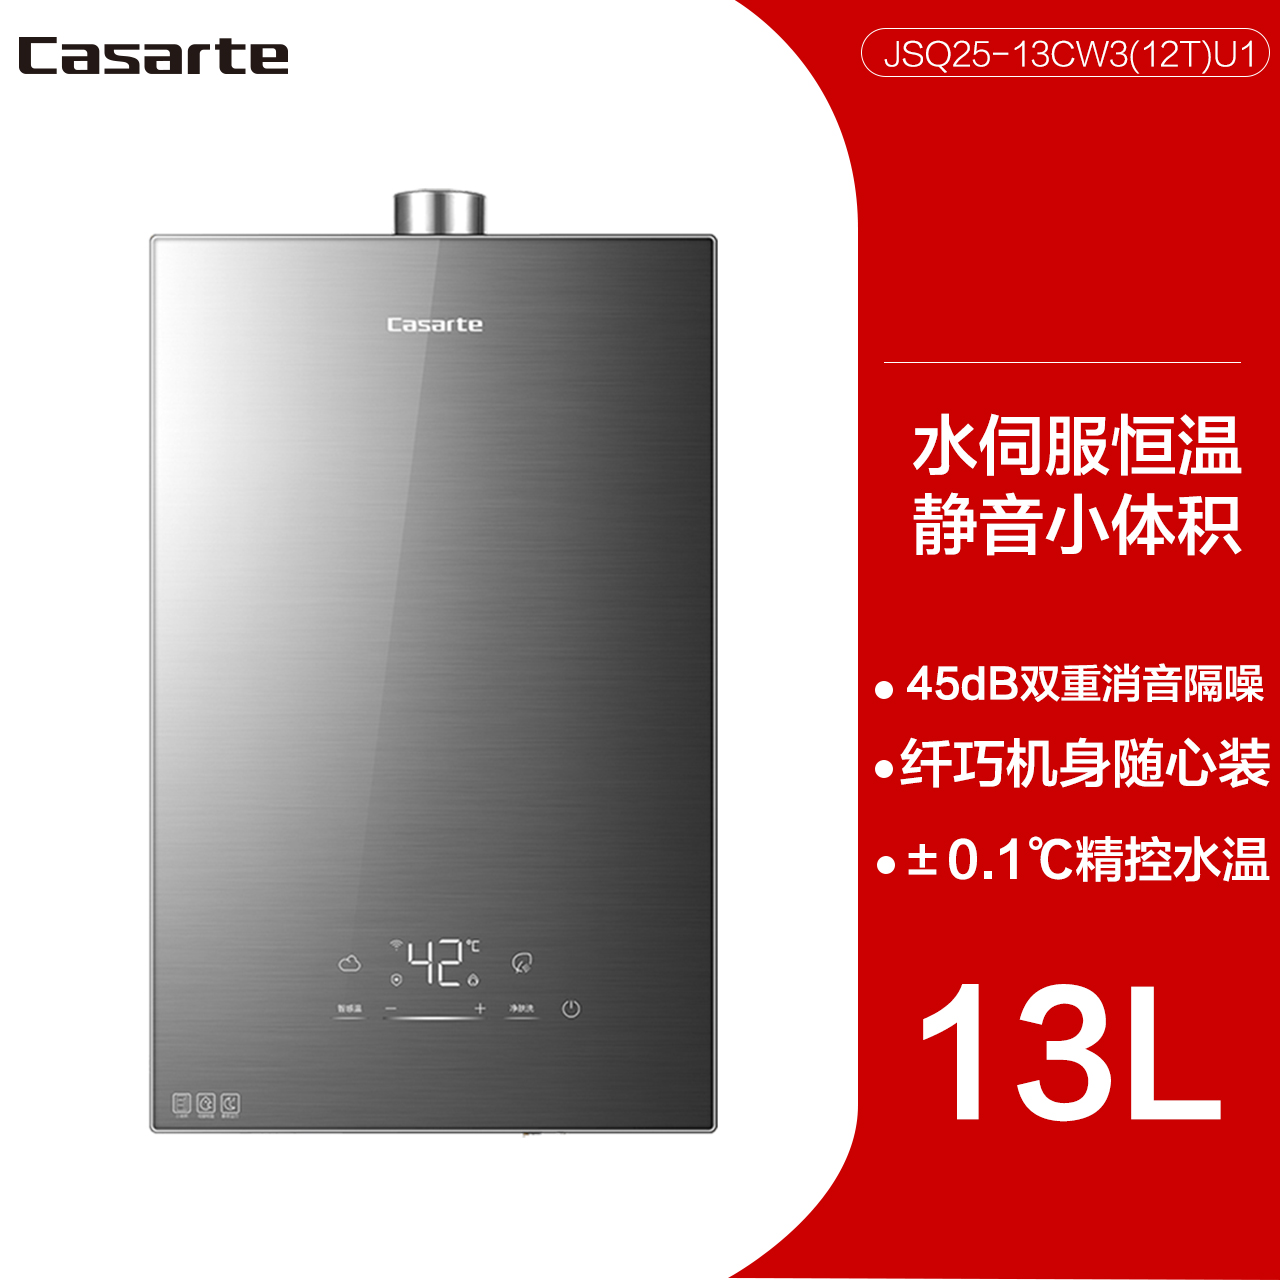 [Nhiệt độ không đổi chuyển động không] Máy nước nóng khí Casarte Casarte 13L / 16L nước servo ức chế thang nhiệt độ không đổi cw3 máy năng lượng mặt trời bình minh máy nước nóng mini 